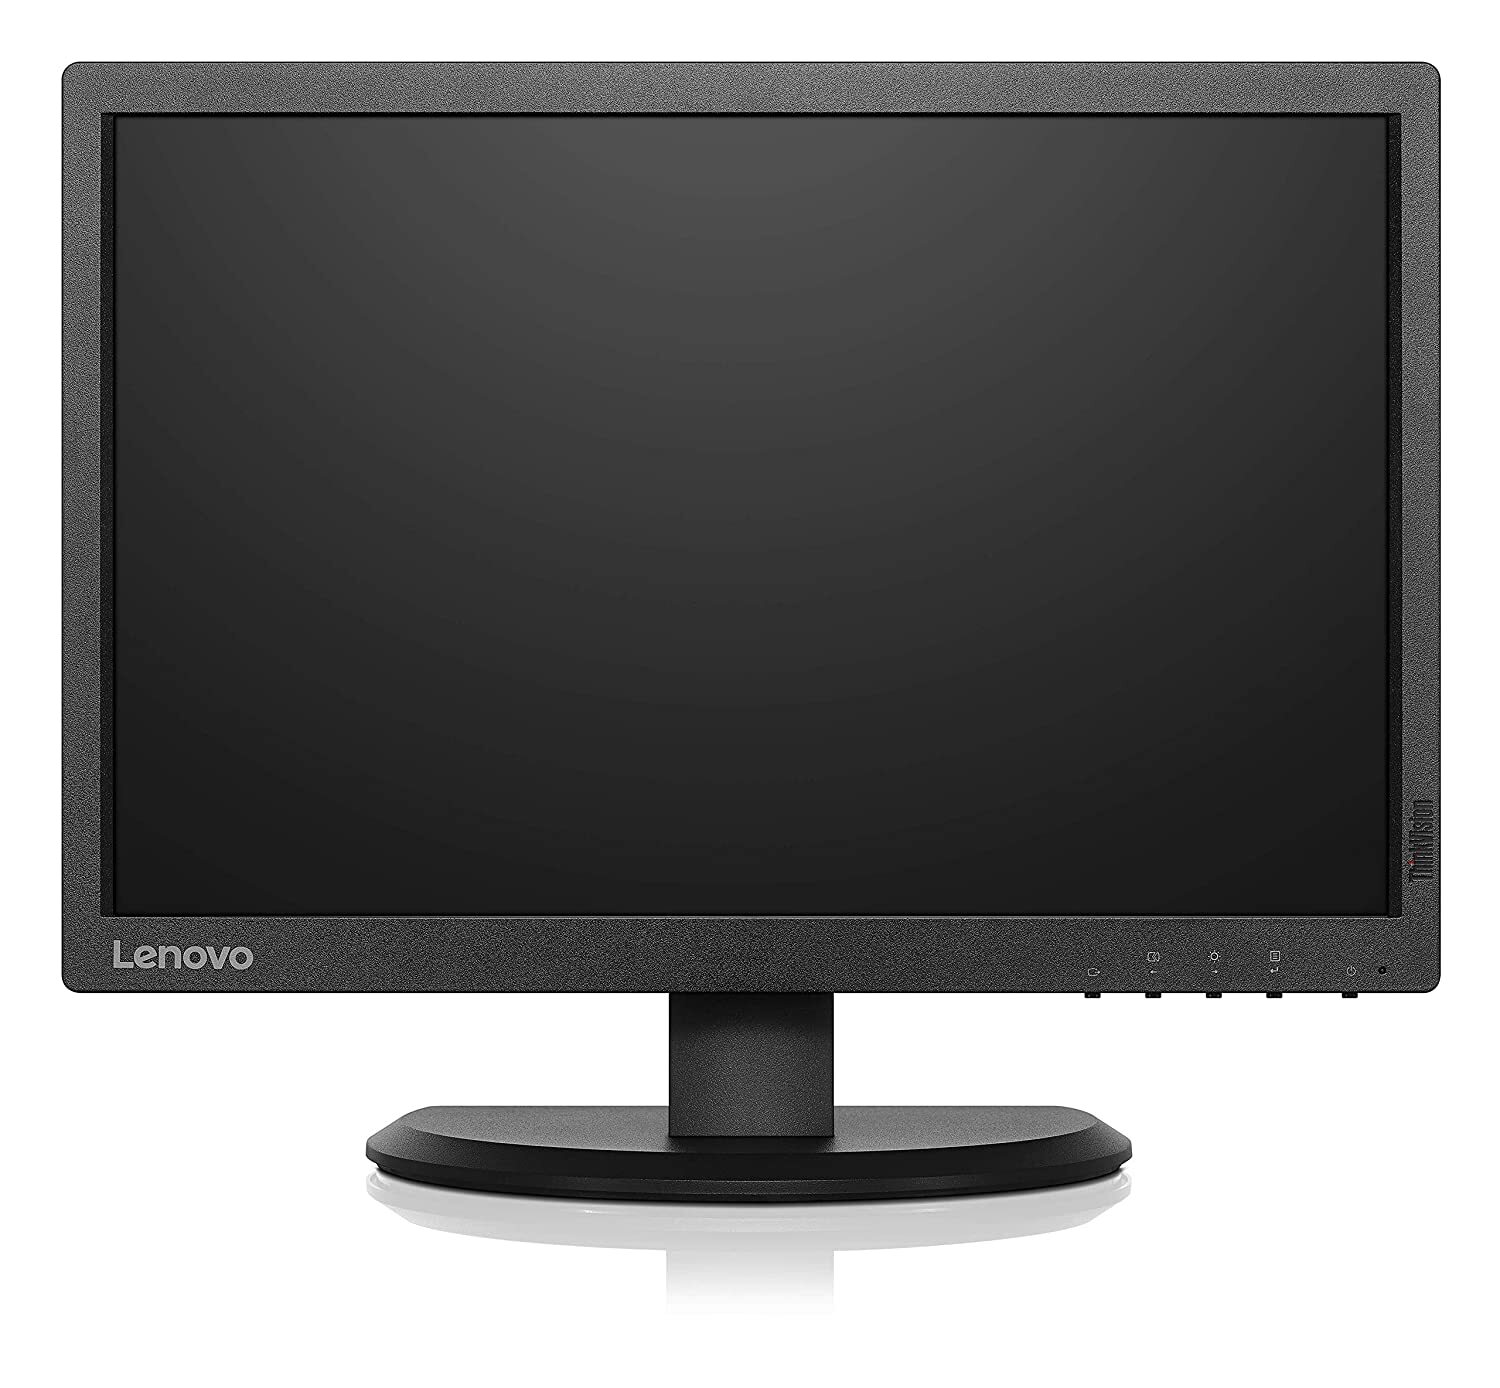 Desktop Lenovo V530s-S26S00 Dual Core G5420, 4GB RAM,1TB HDD, No DVD, DOS OS with 19.5 inch Monitor screen E2054-M000000000361 www.mysocially.com